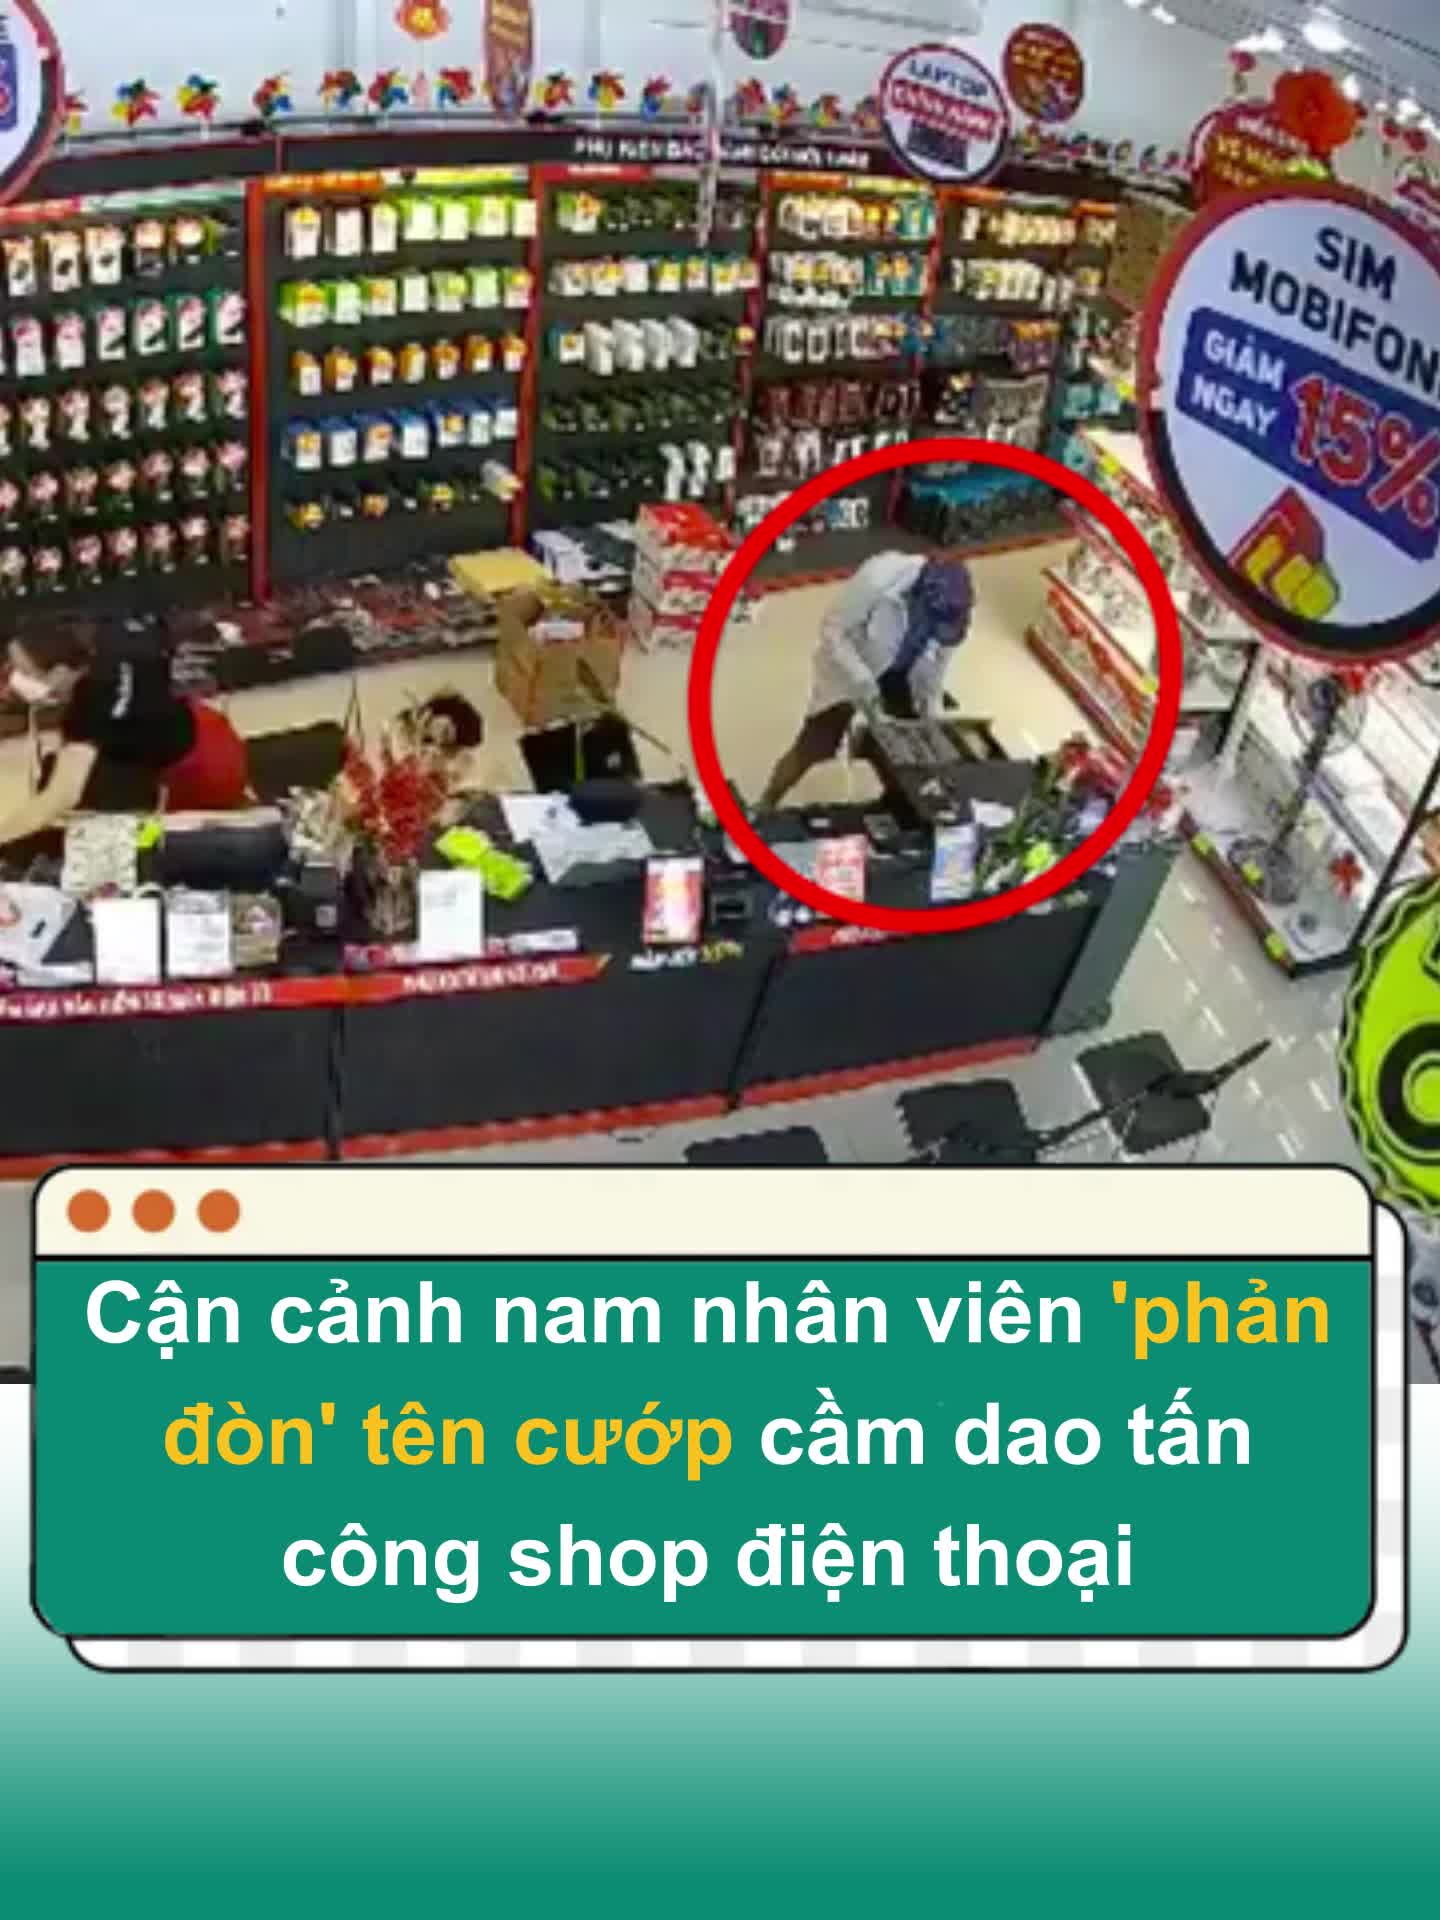 Cận cảnh nhân viên cửa hàng chống trả tên cướp cầm dao tấn công shop điện thoại